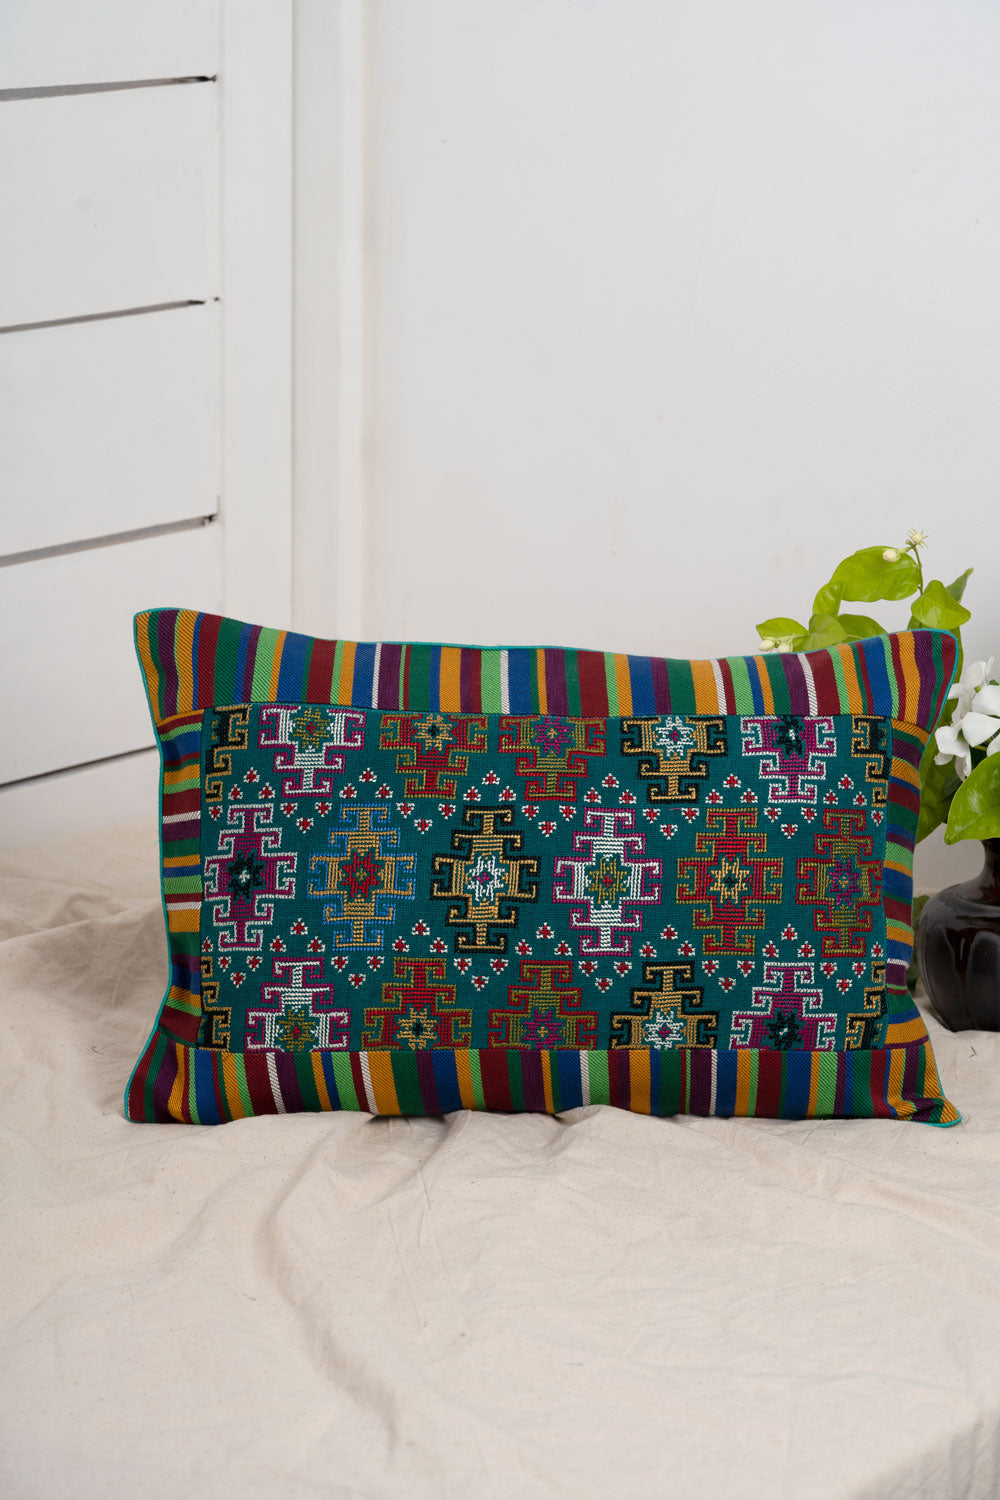 Jat Garasiya Hand Embroidered Cushion / Pillow Cover